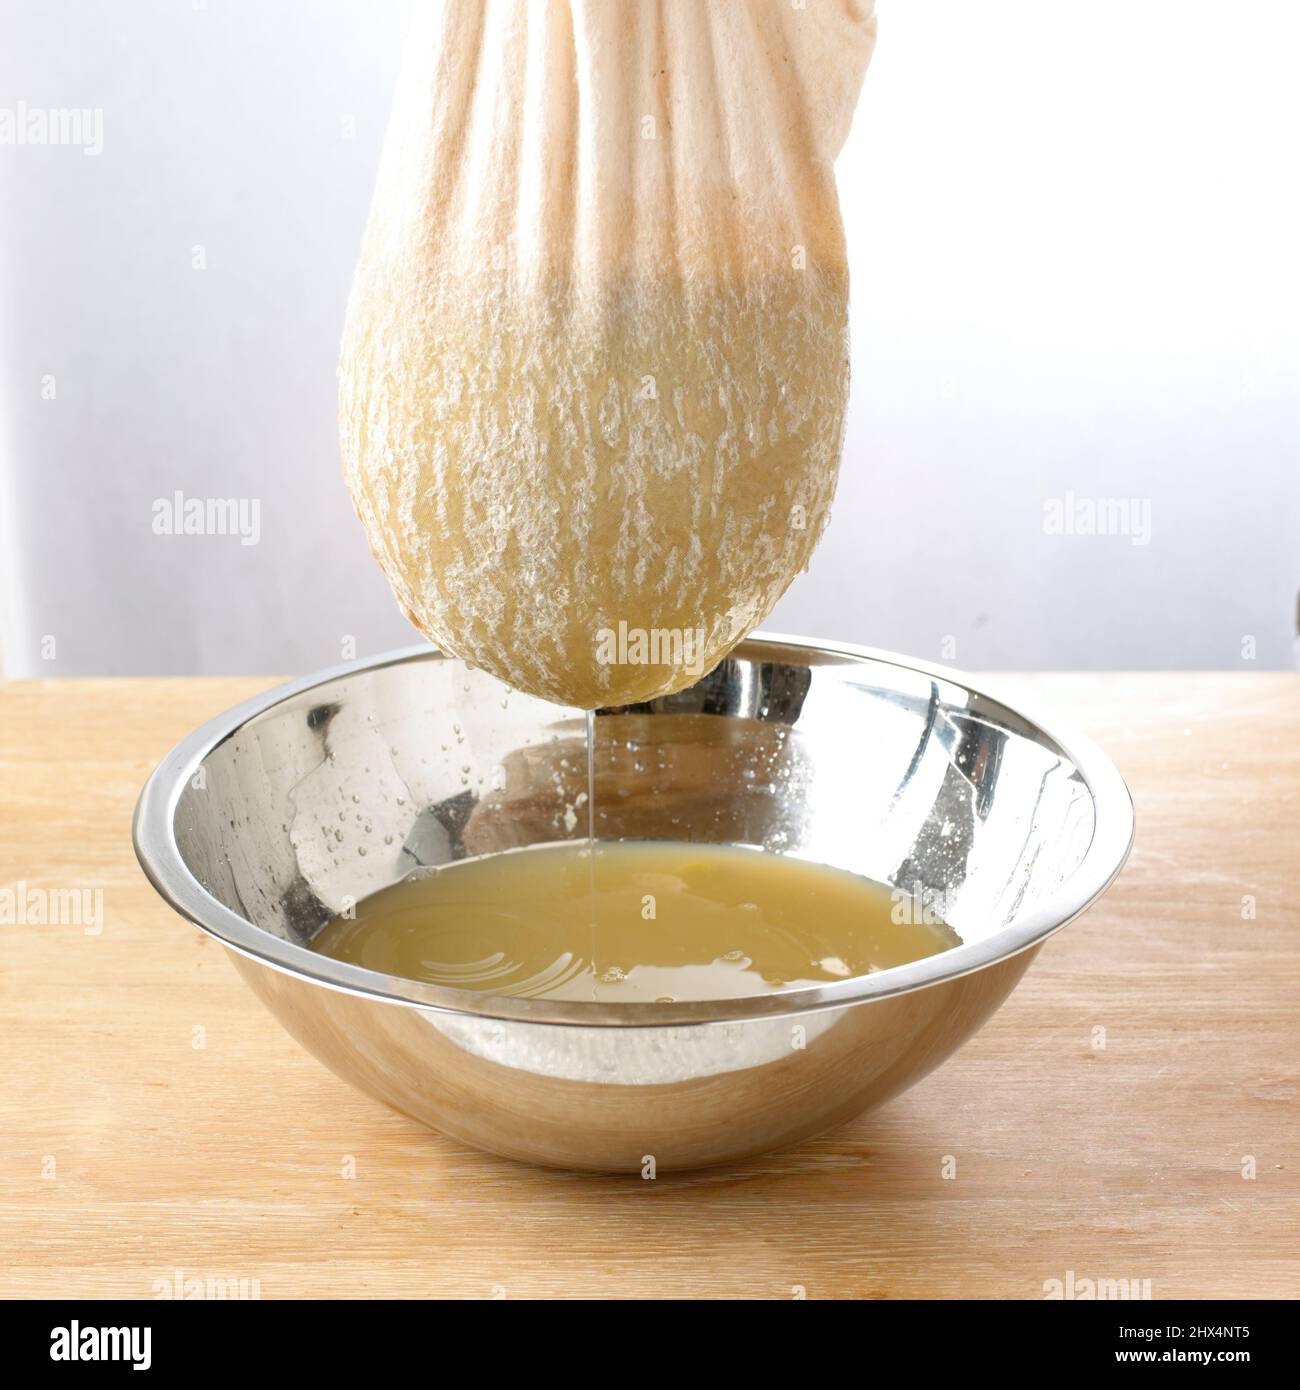 Die Traubenmischung durch ein Musselintuch in eine silberne Schüssel abseihen. Stockfoto